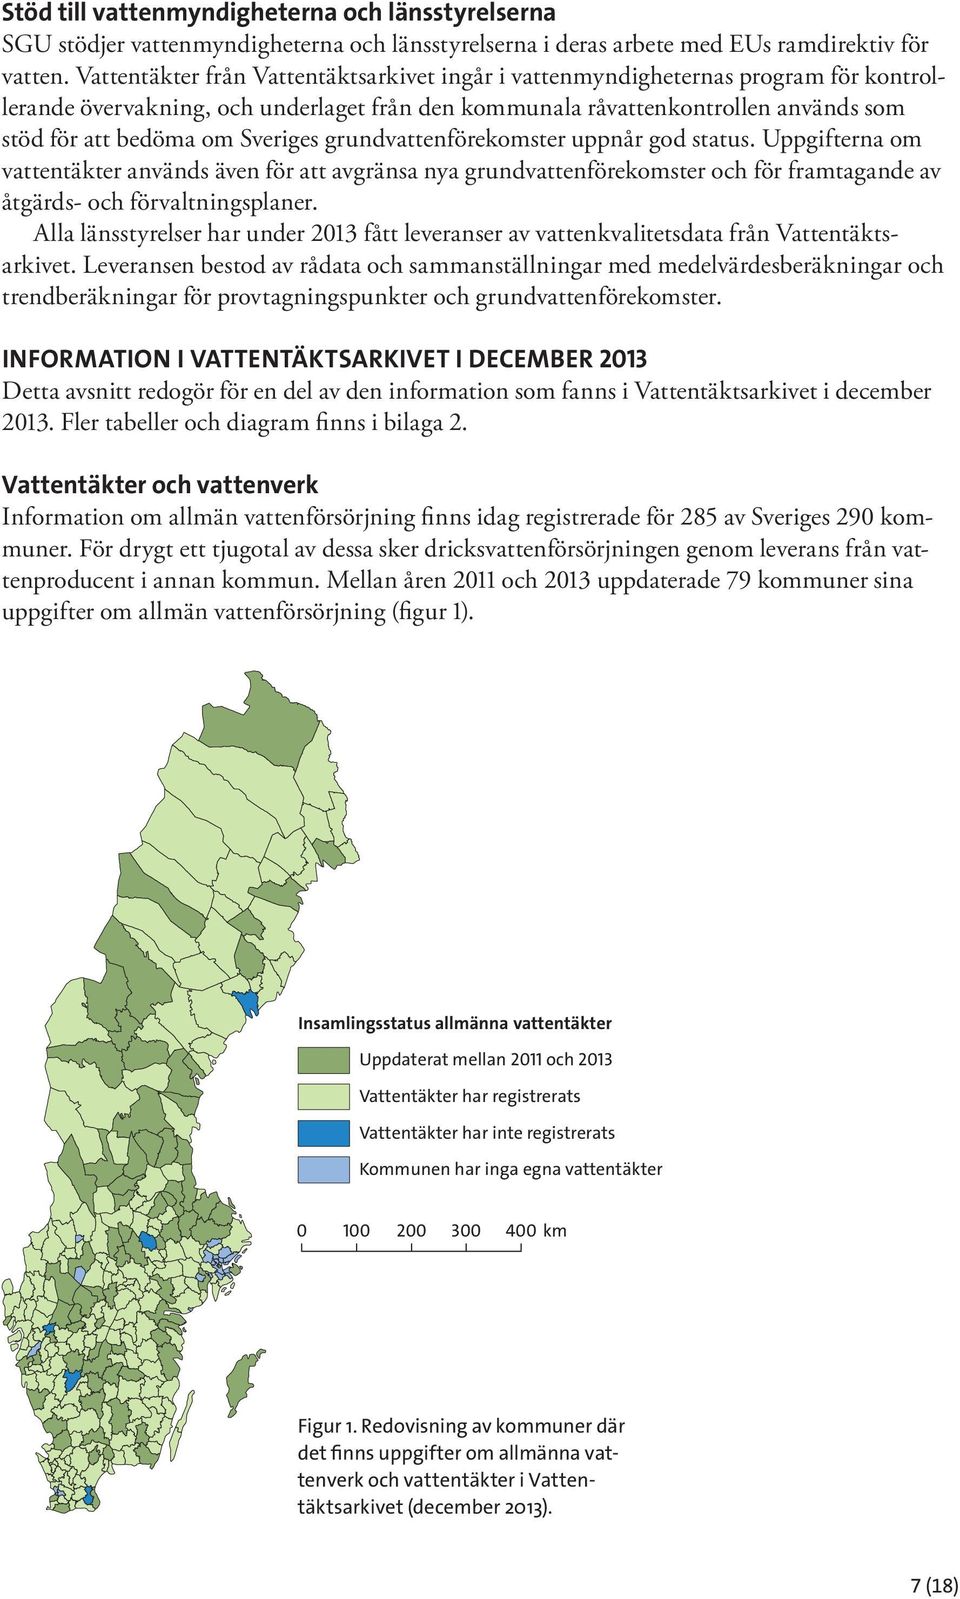 Sveriges grundvattenförekomster uppnår god status. Uppgifterna om vattentäkter används även för att avgränsa nya grundvattenförekomster och för framtagande av åtgärds- och förvaltningsplaner.